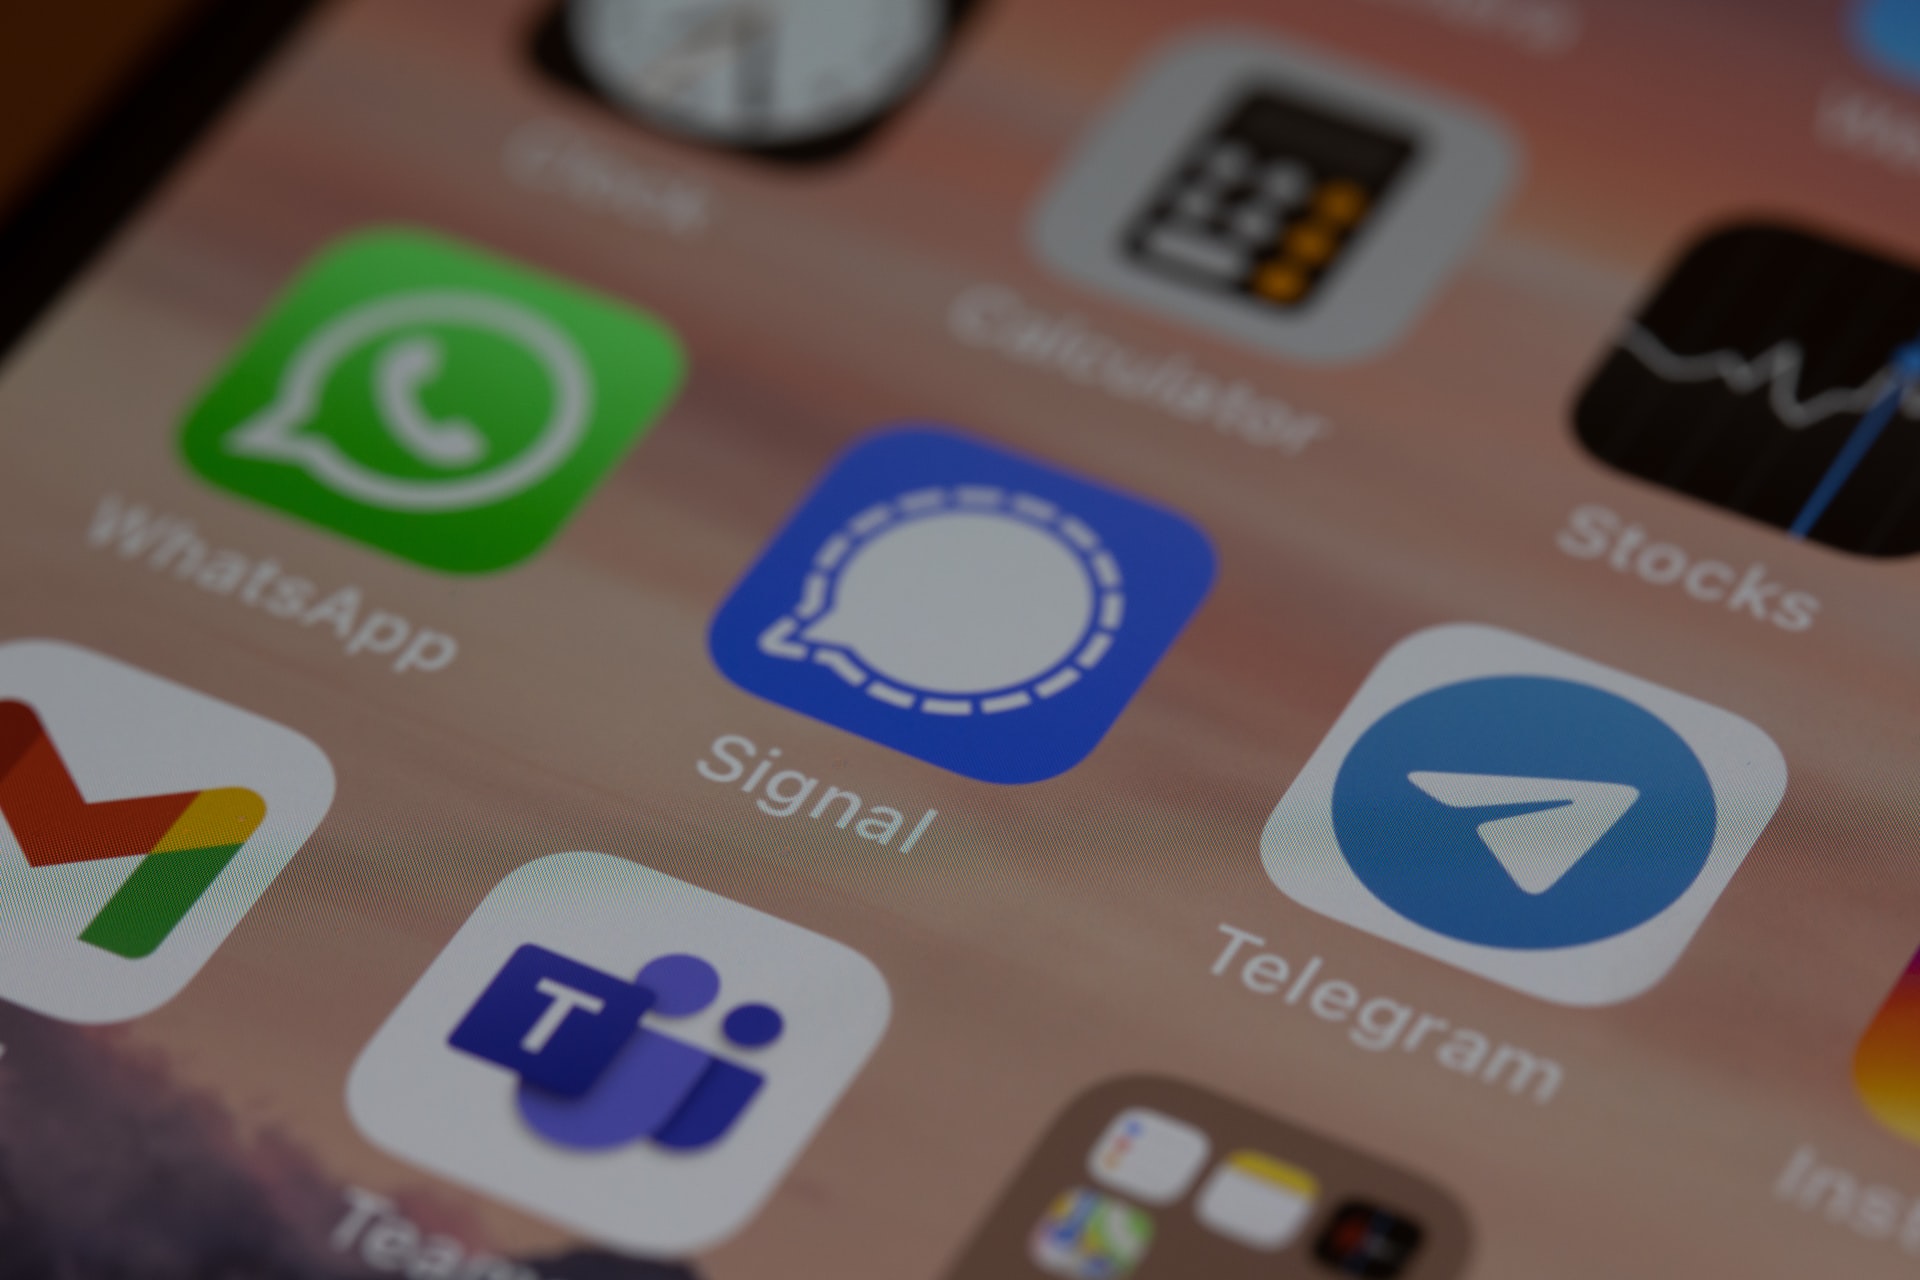 ¿Qué app consume más datos, Telegram o WhatsApp?